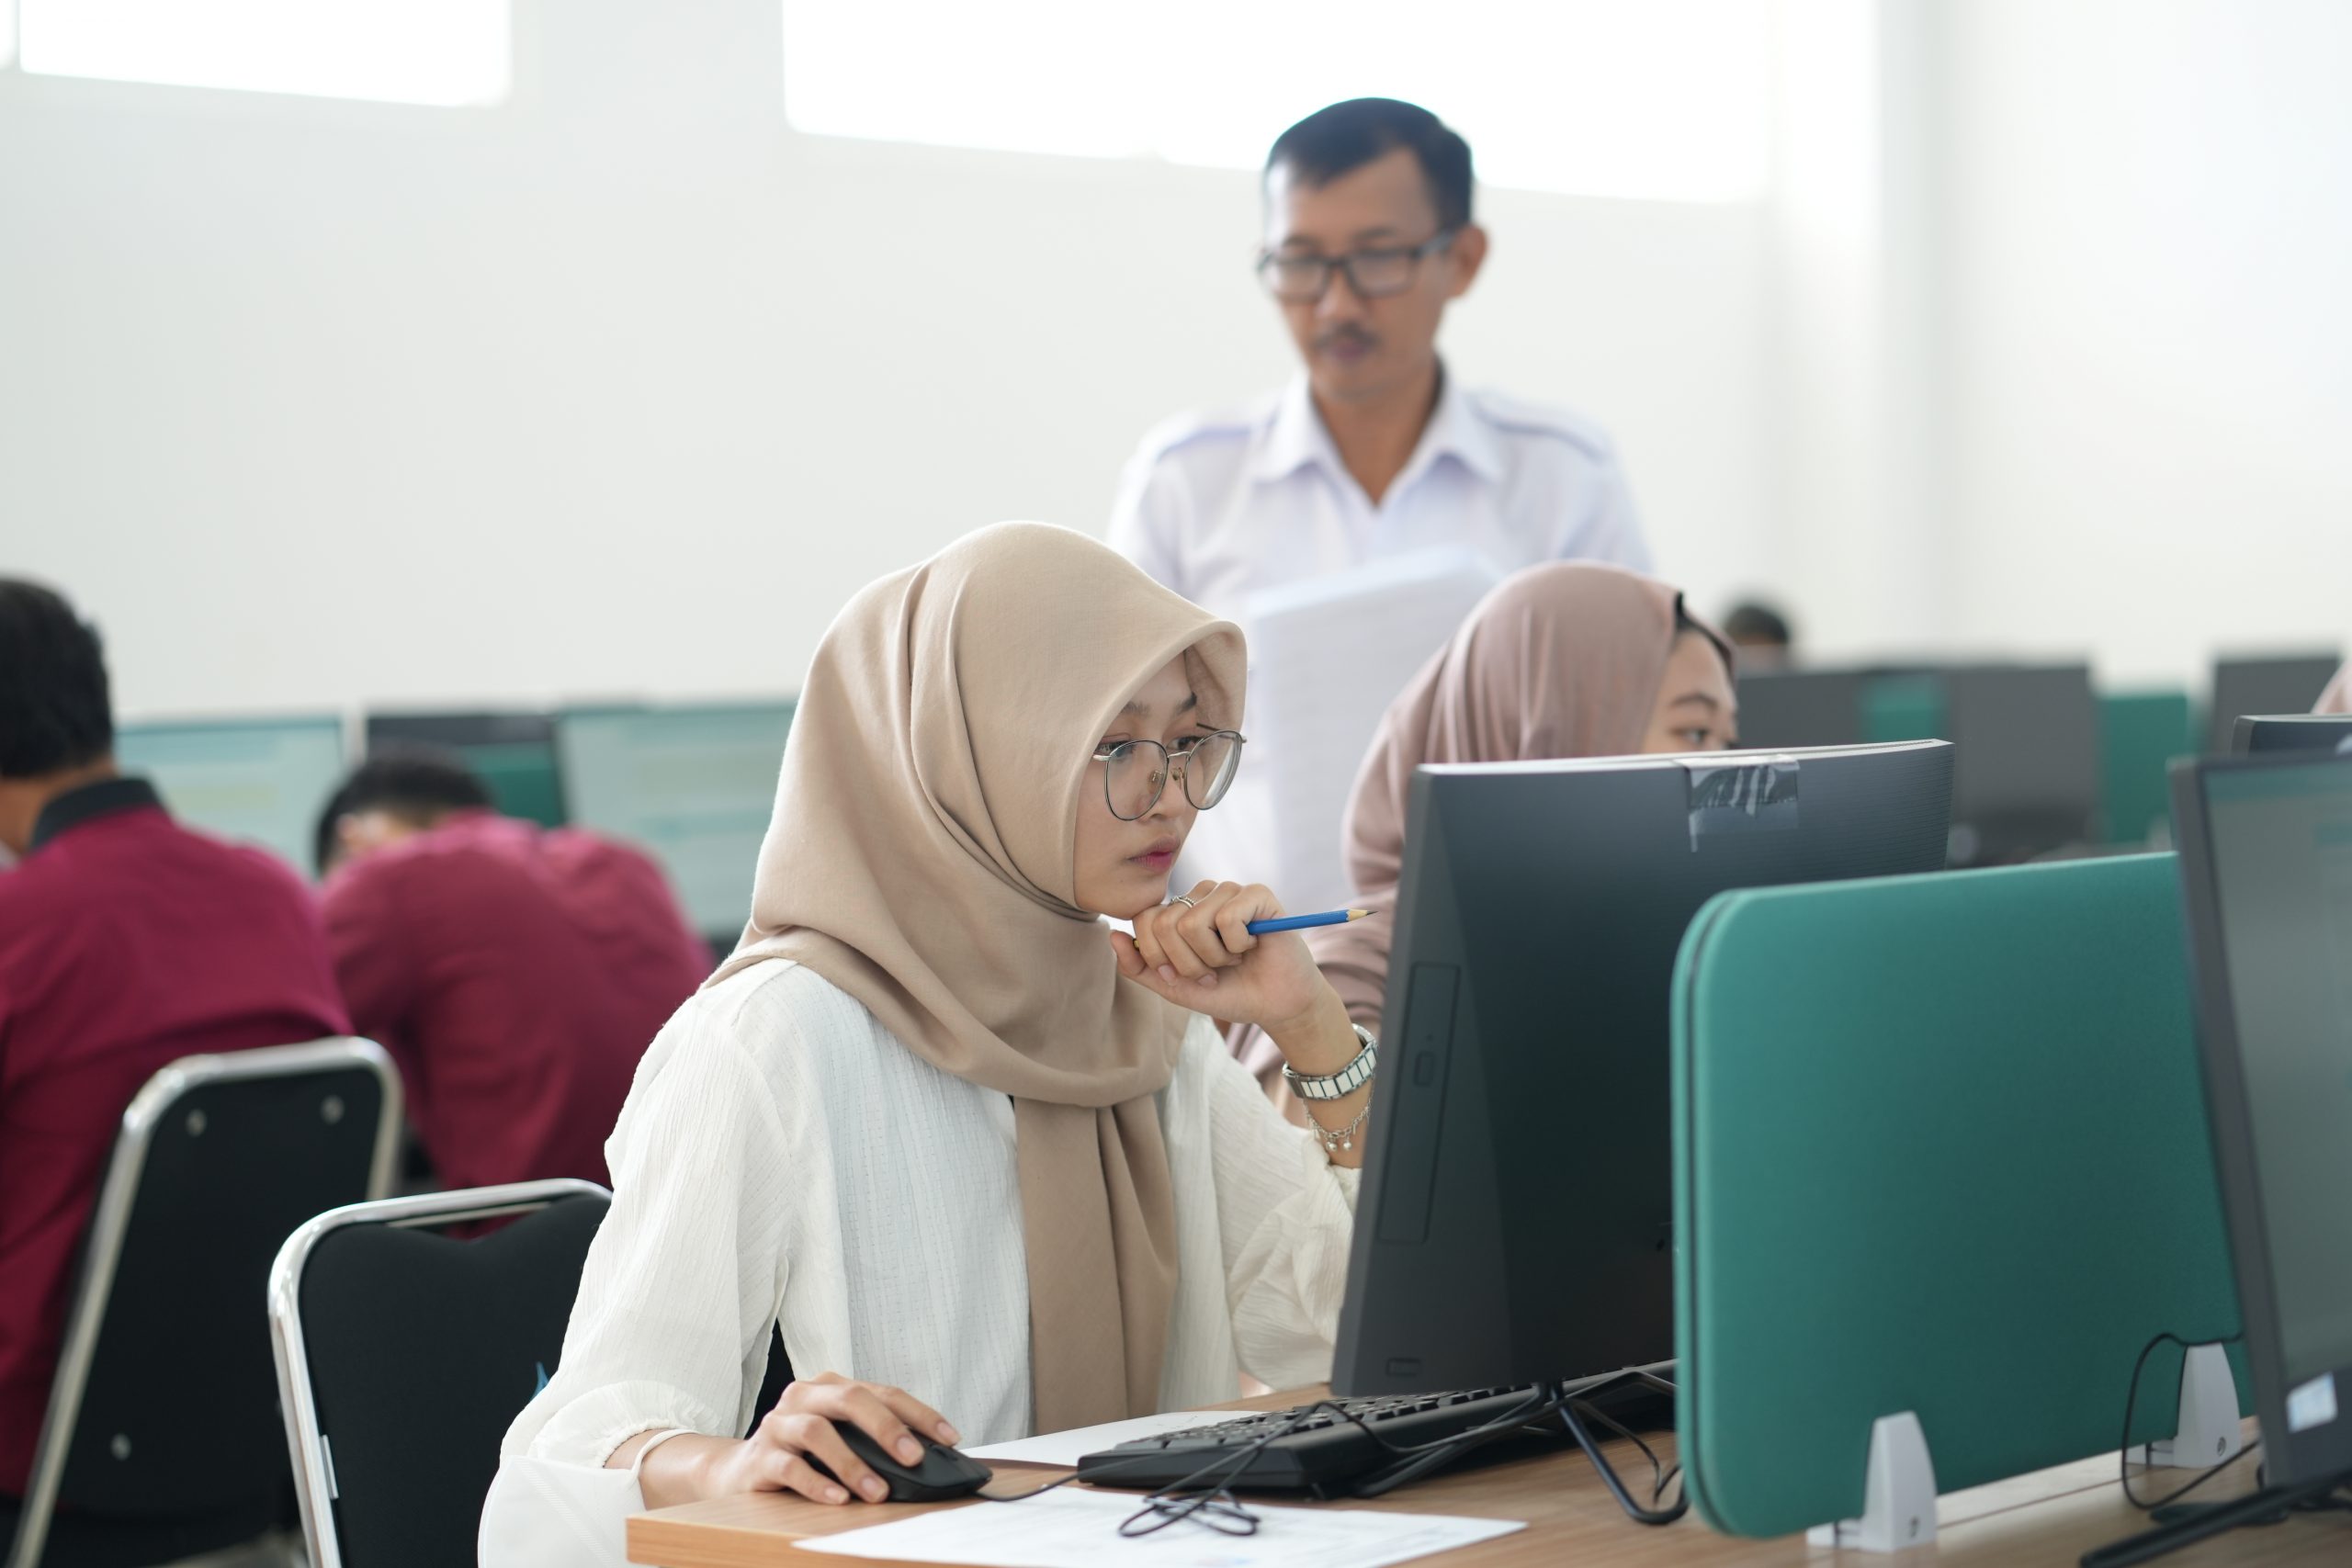 Calon mahasiswa baru saat menggunakan laboratorium komputer di kampus 2 (Foto:Muhammad Fikri Fadhiil/Sadega)